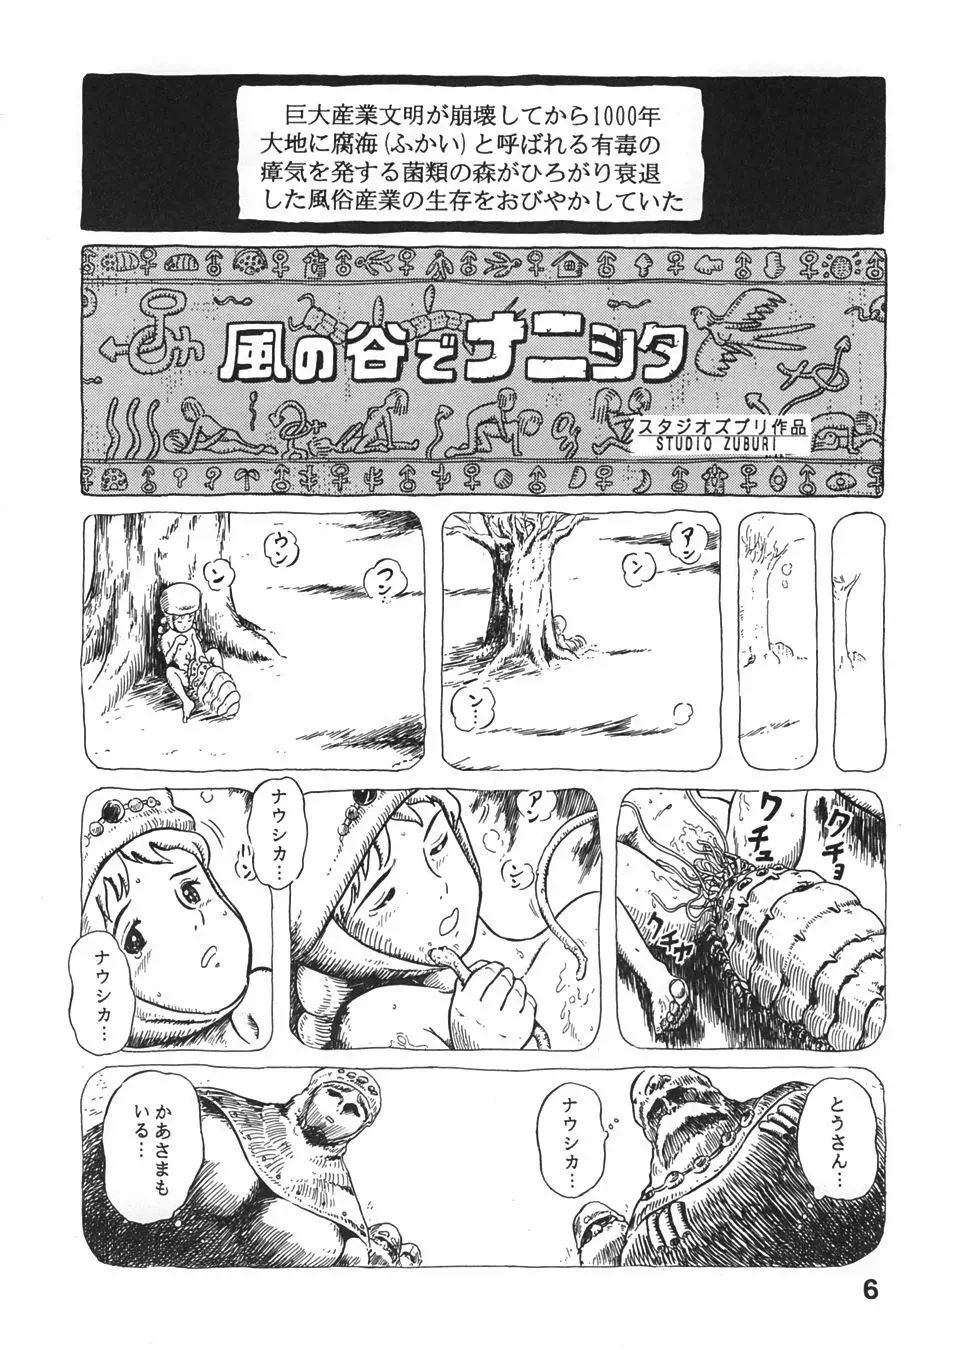 スタジオズブリ作品 Page.5